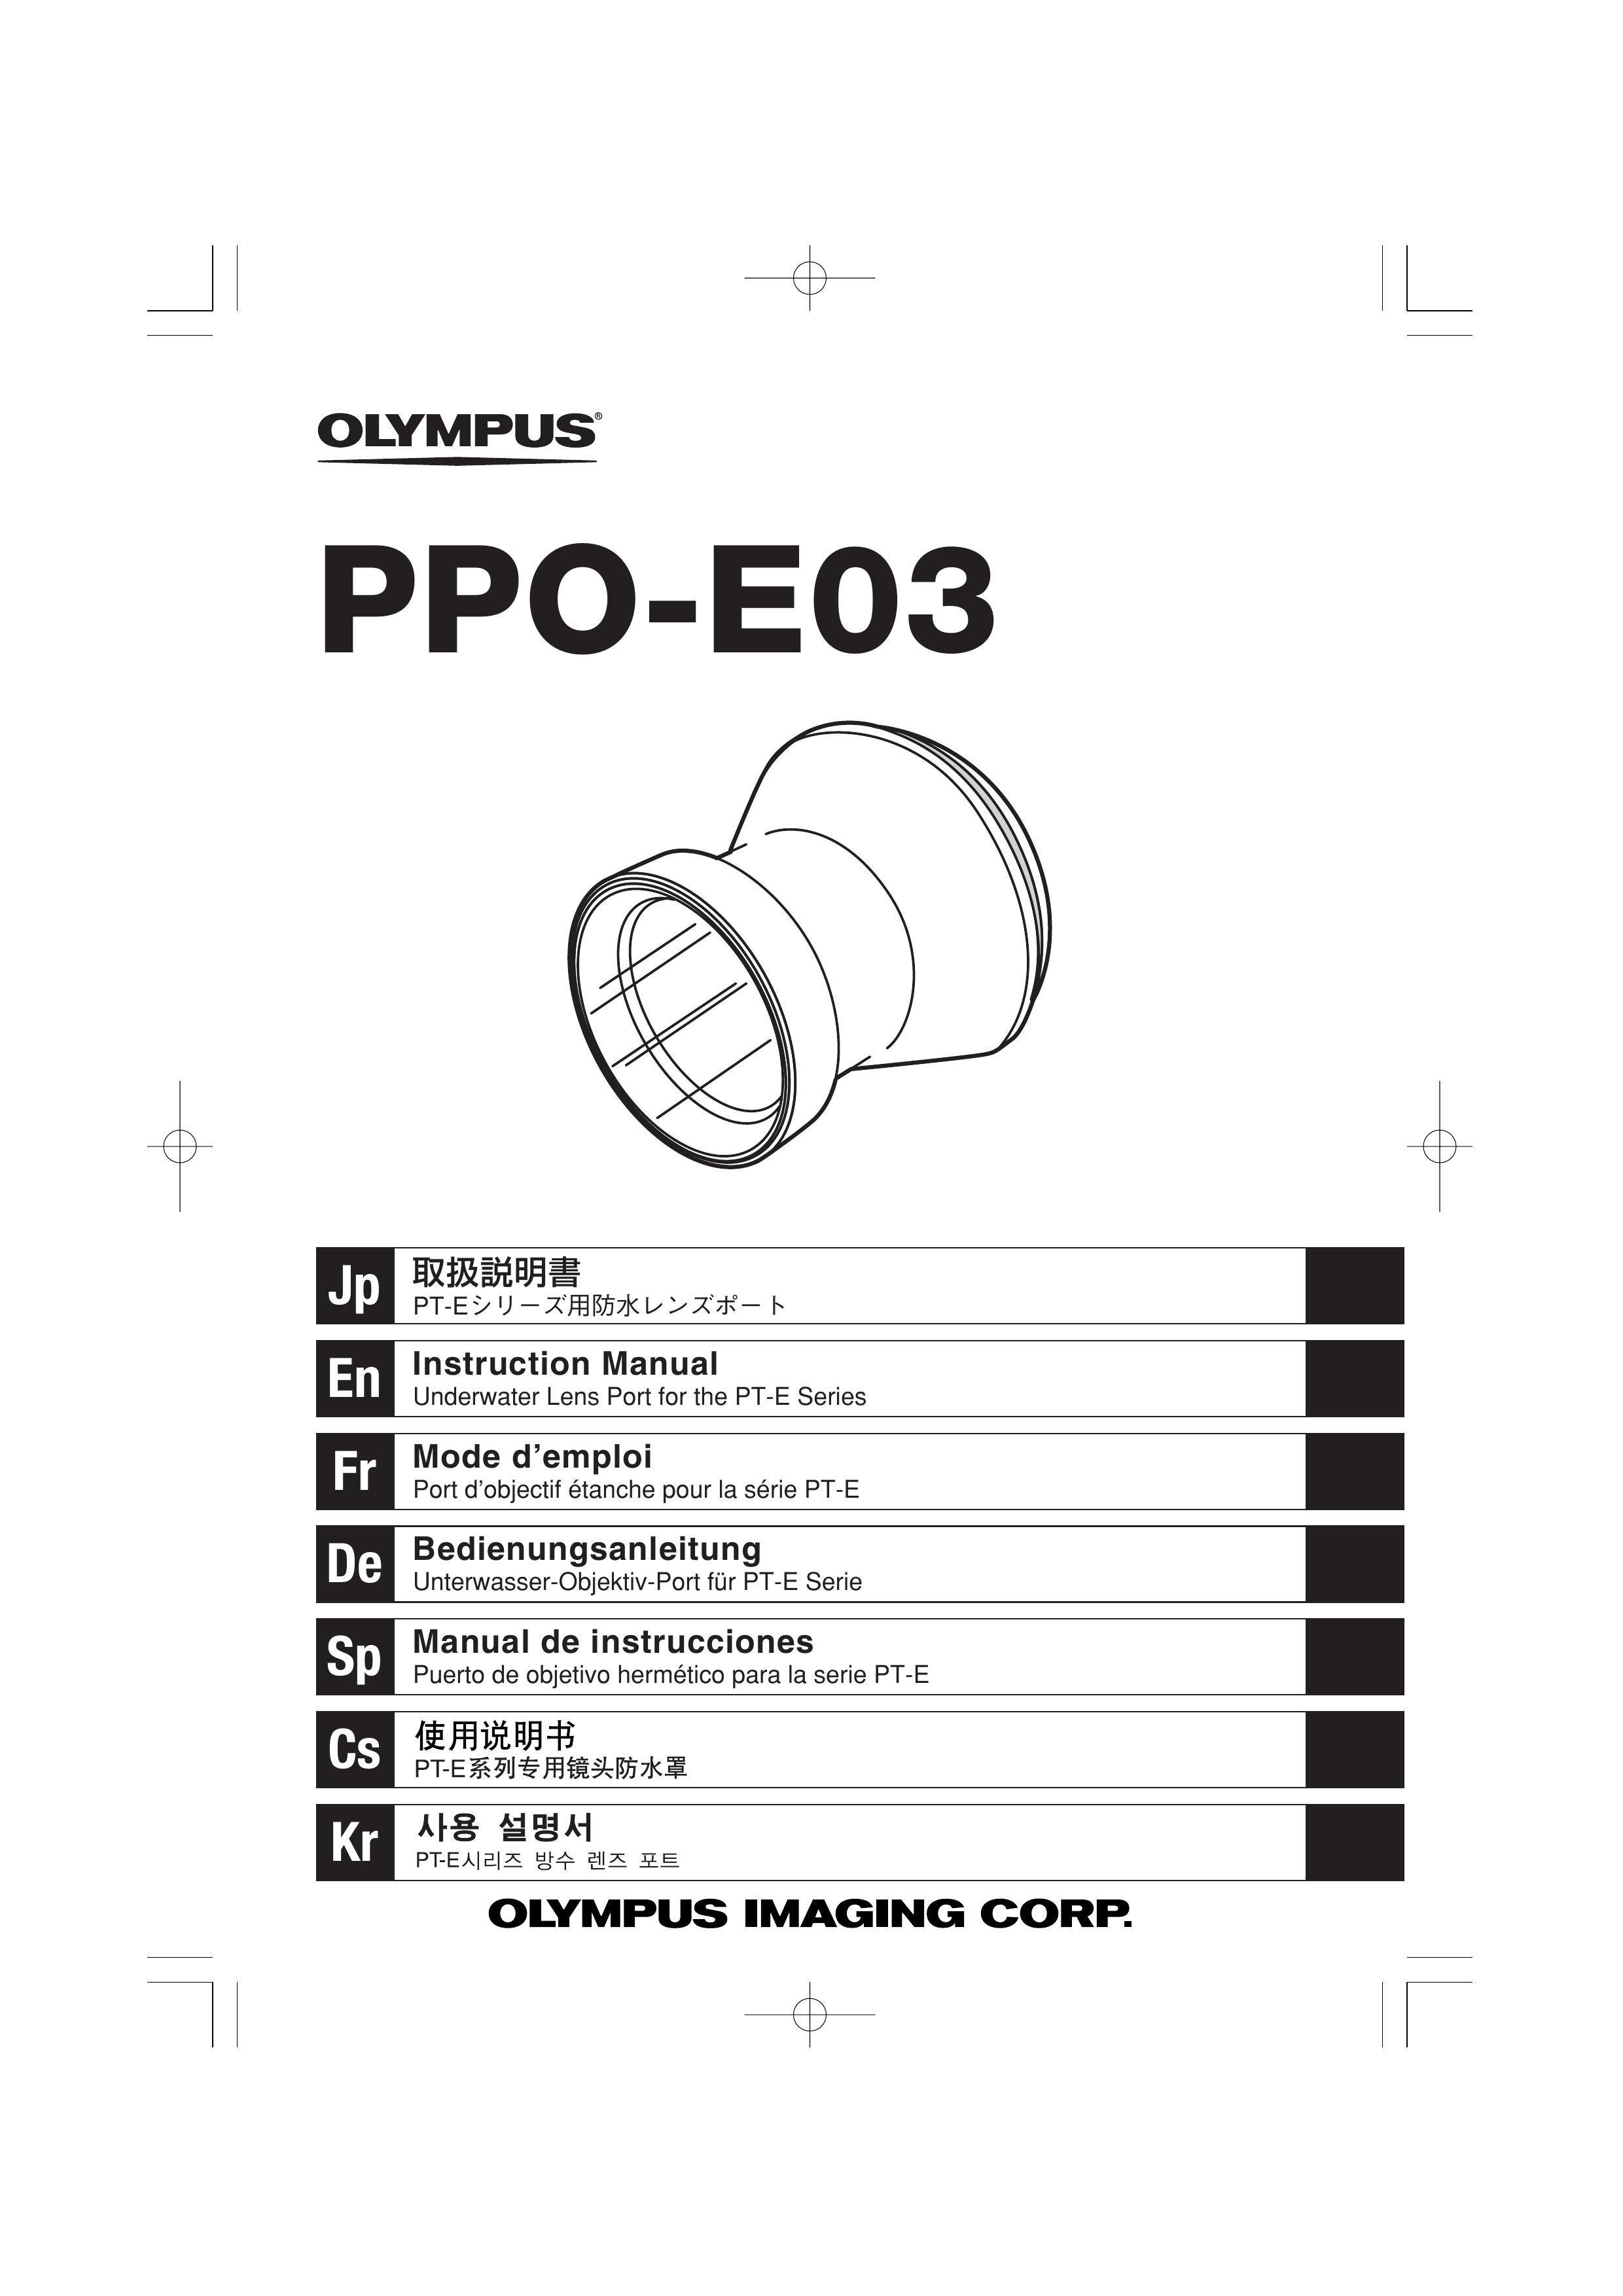 Olympus PPO-E03 Camera Accessories User Manual